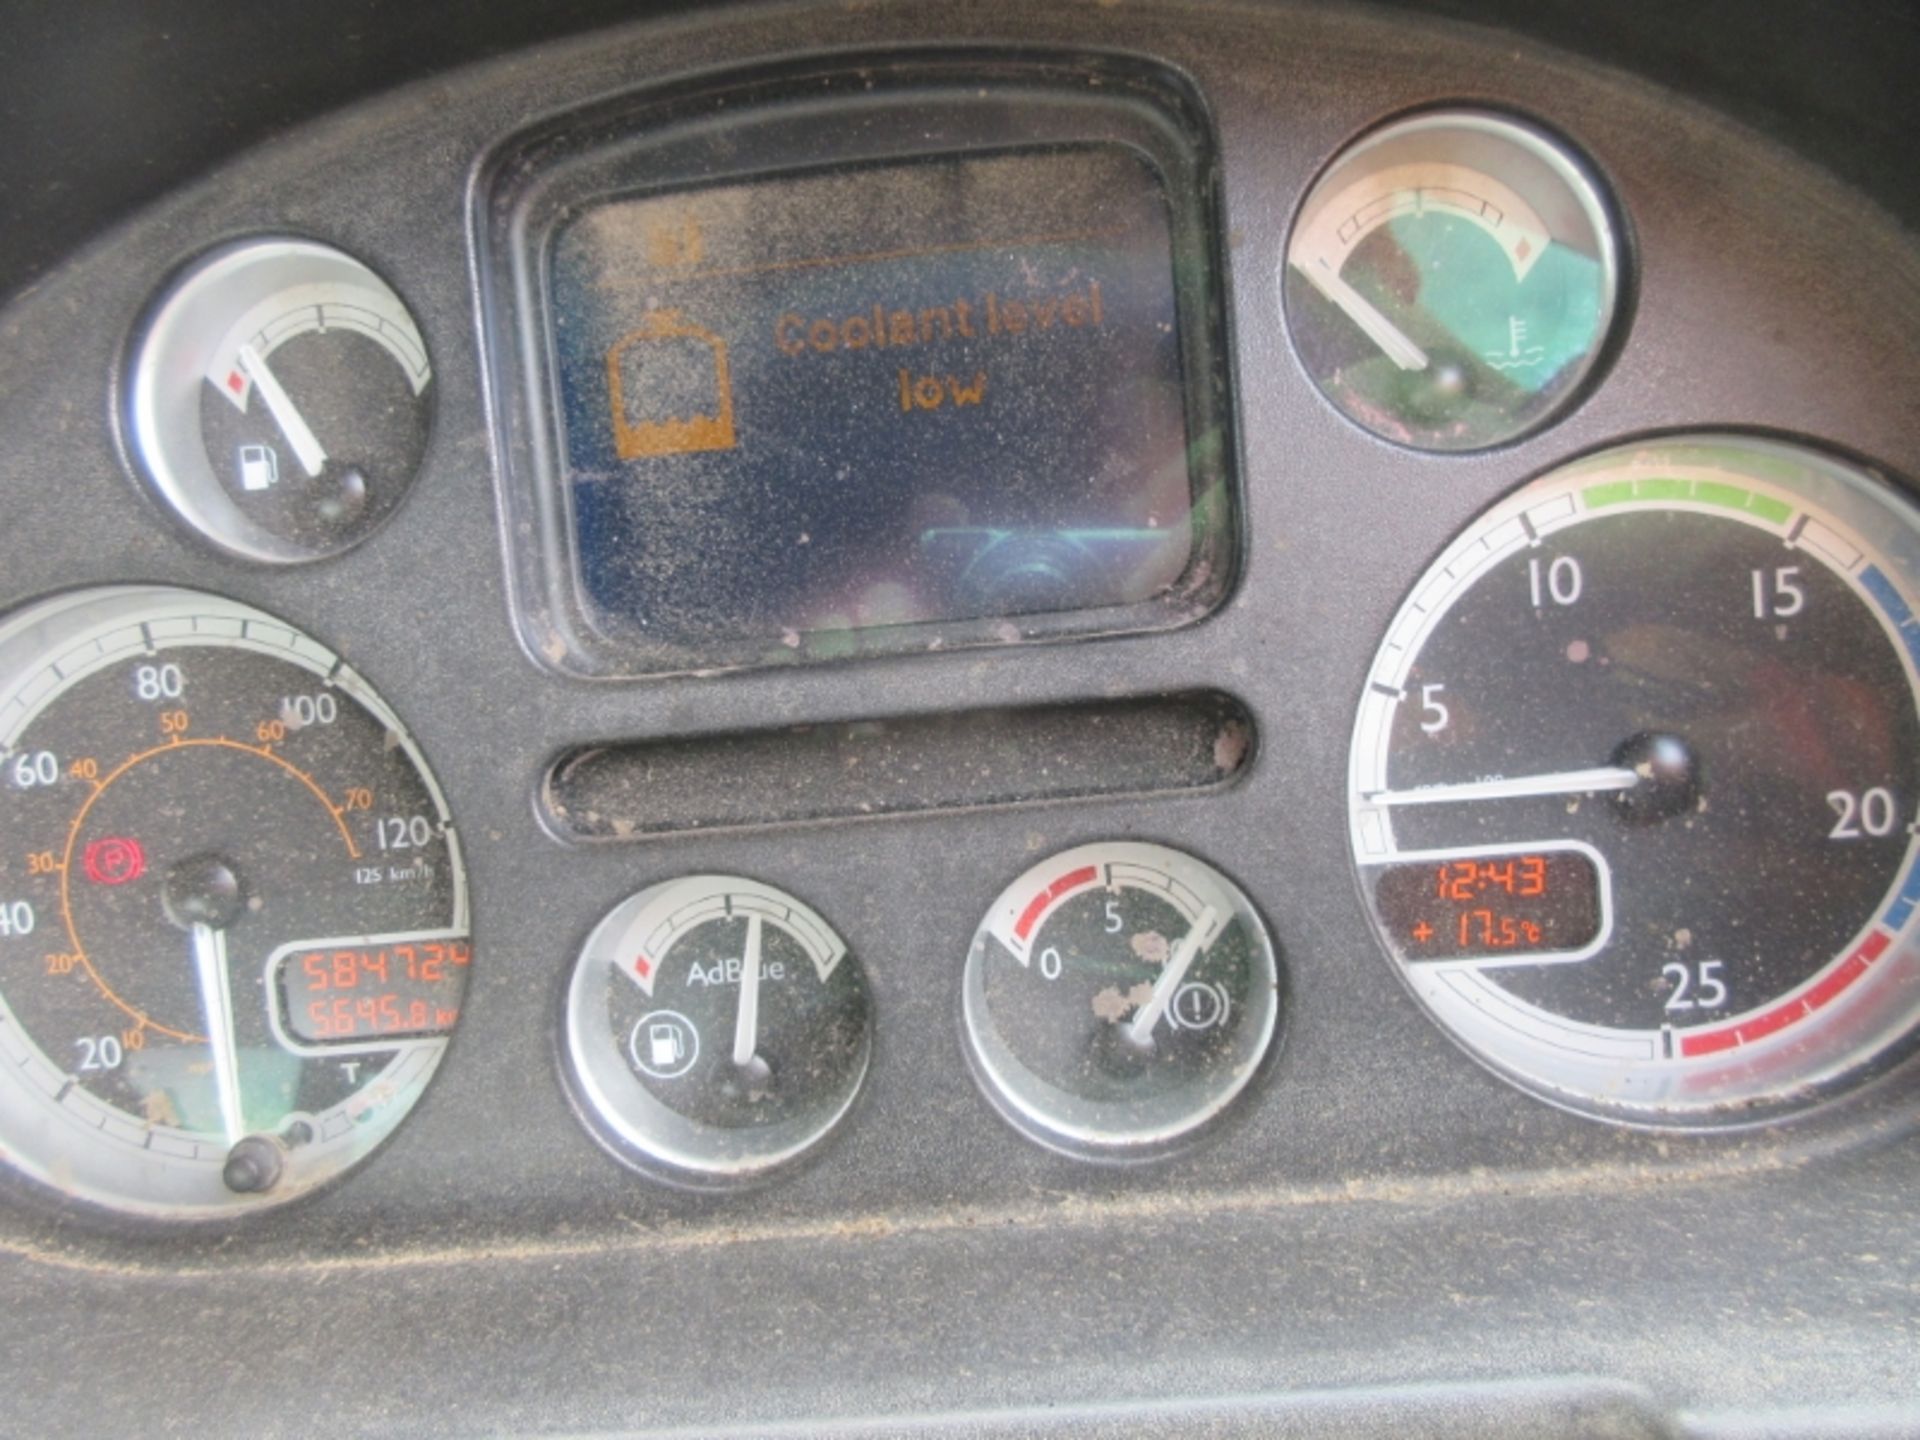 DAF TRUCKS CF 85.360 - 12900cc Day Cab Diesel - VIN: XLRAD85MC0E767246 - Year: 2007 - 584,724 km - - Image 6 of 8